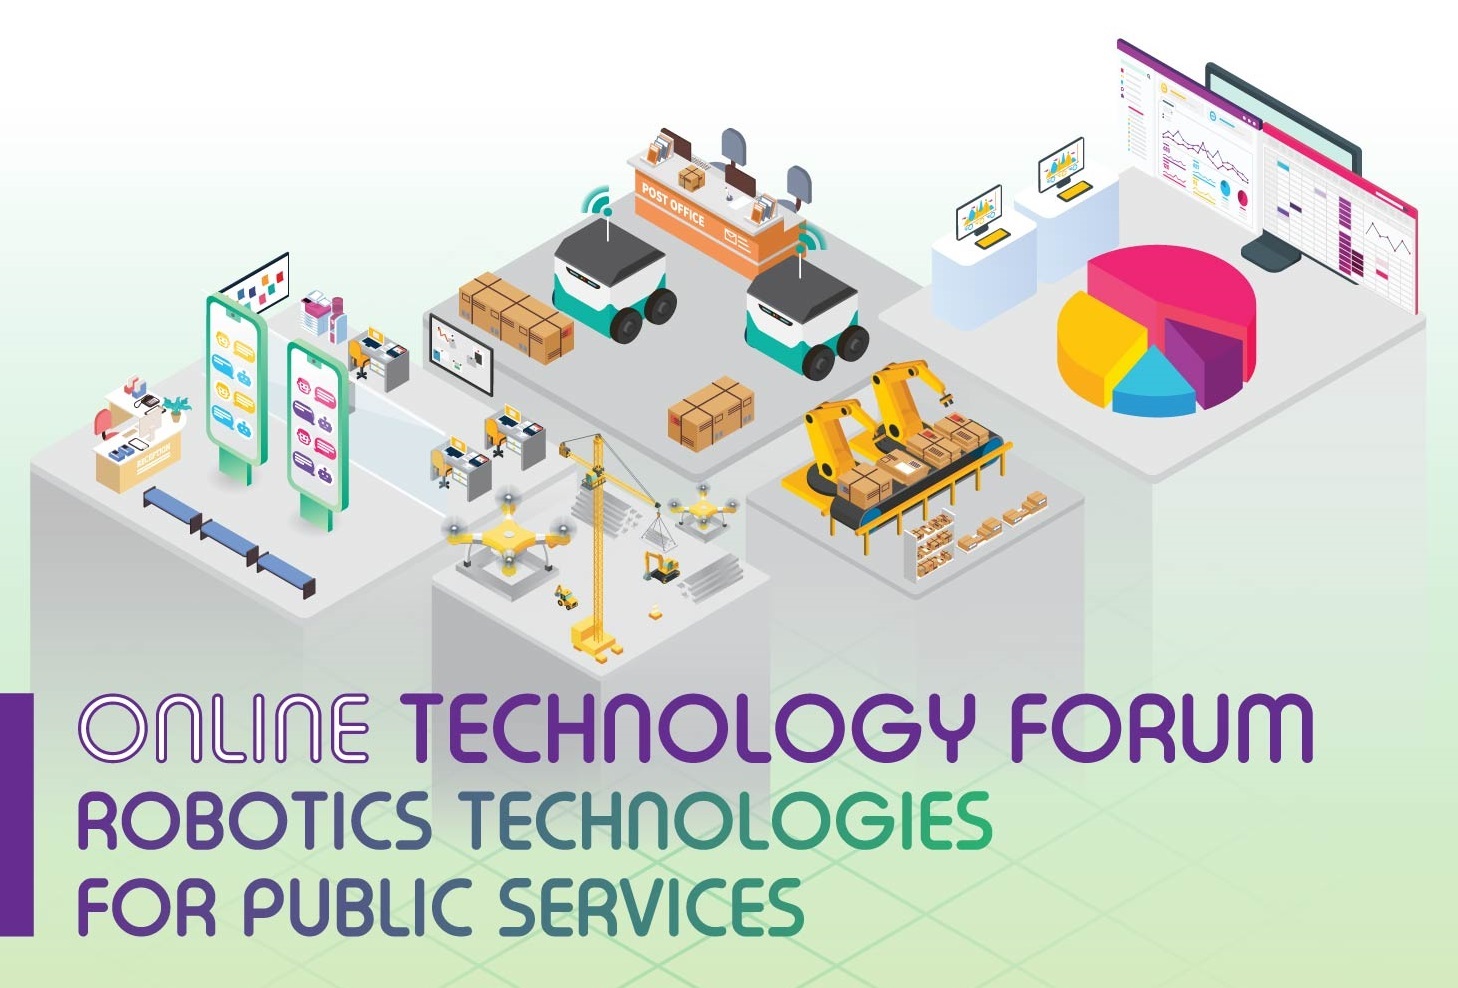 技术论坛 - 机械人科技提升公共服务